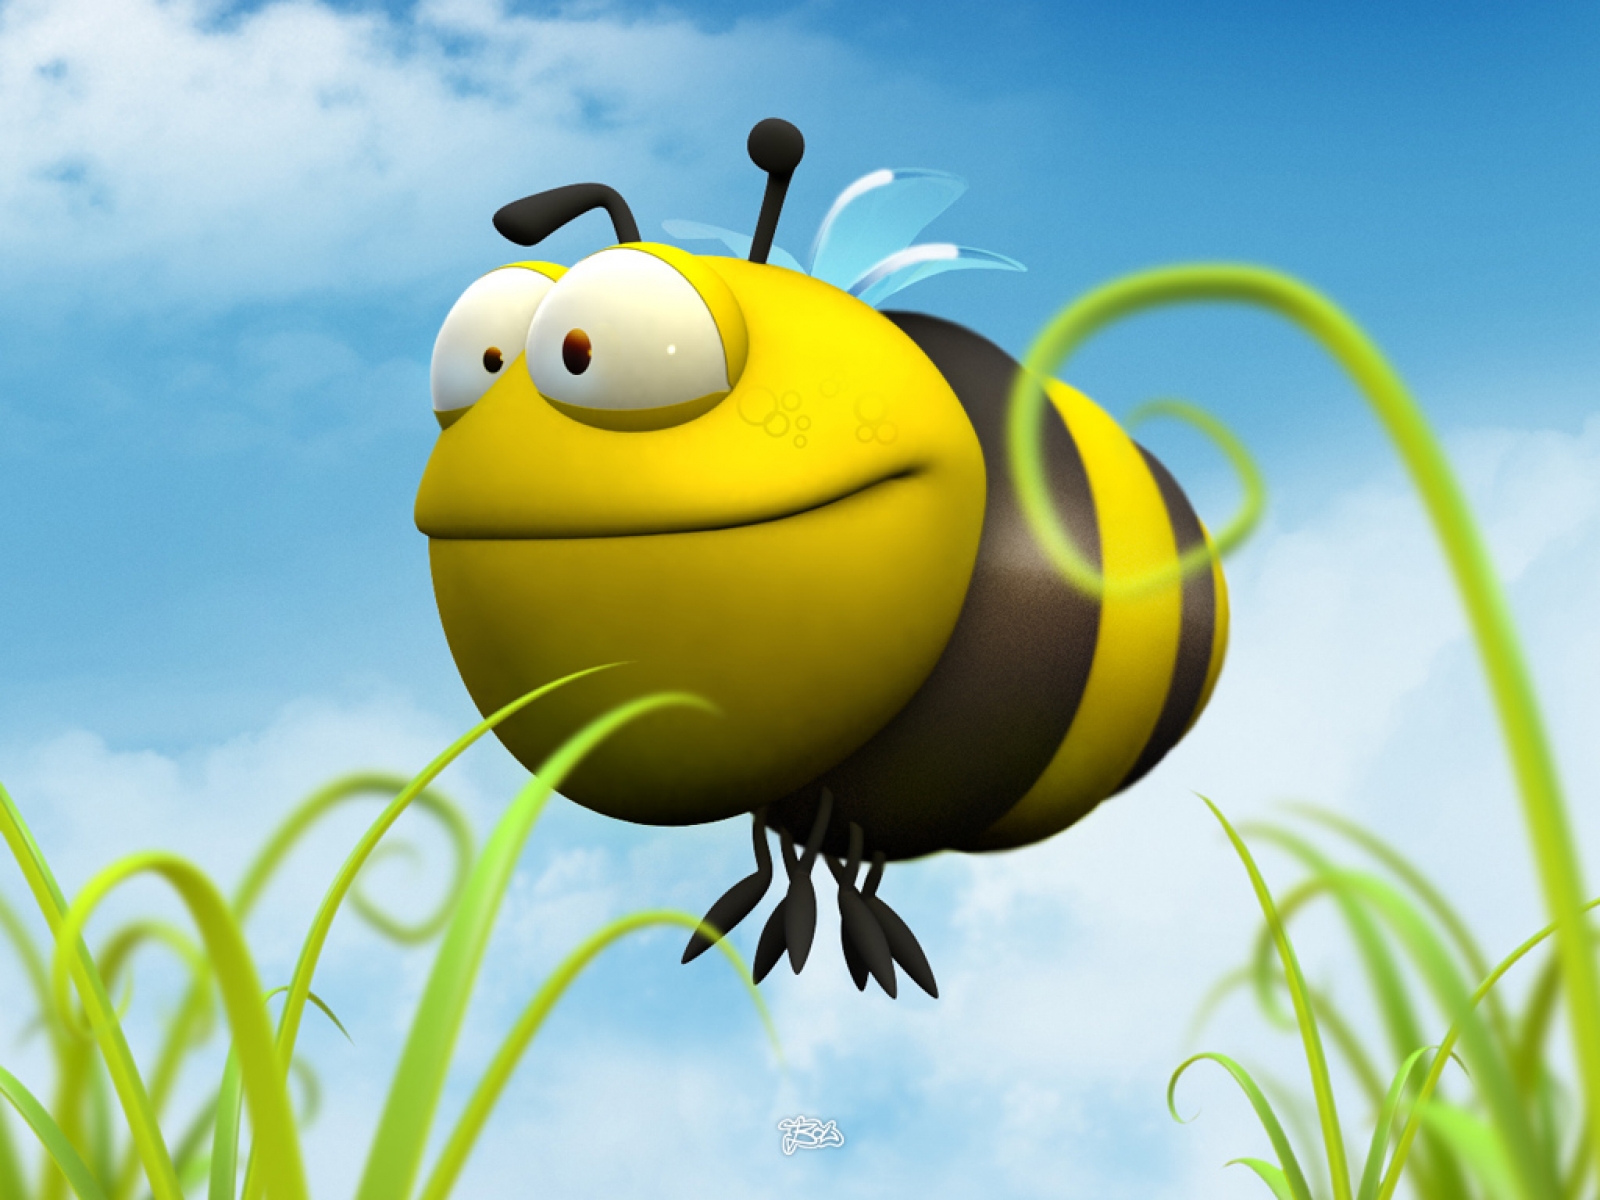 Yellow bumblebee on a high-definition desktop wallpaper.